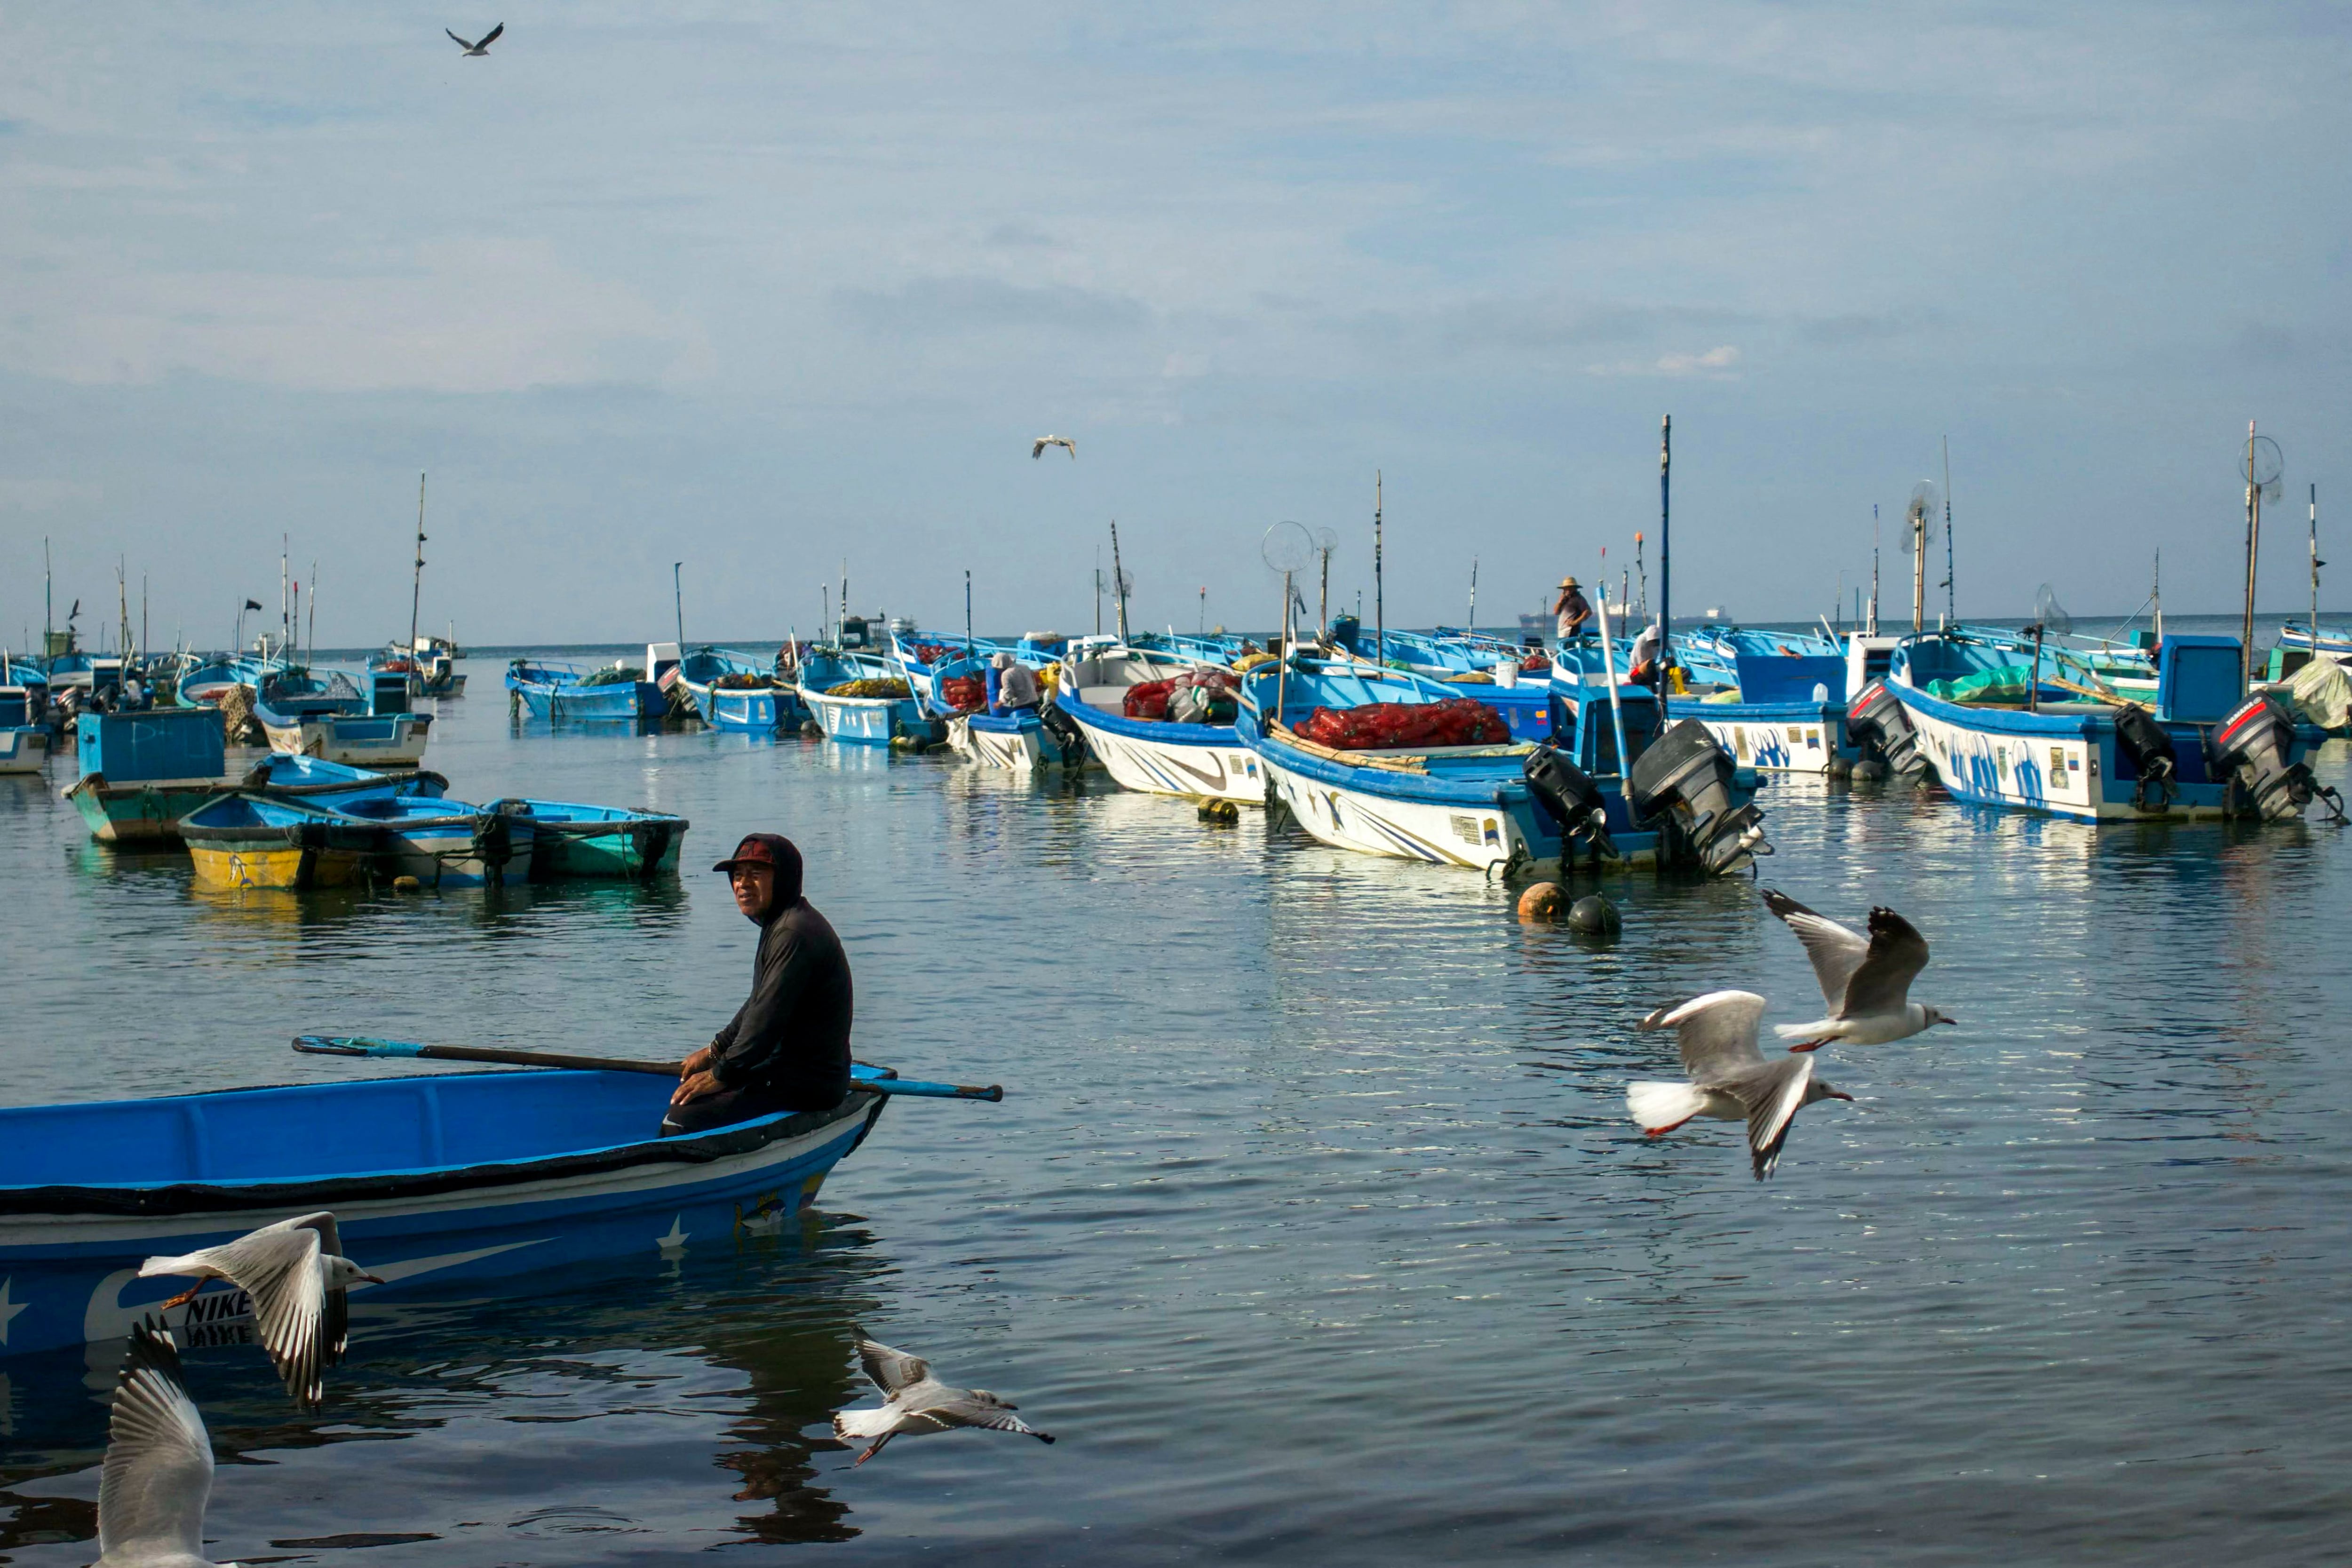 Las pandillas reclutan por la fuerza a pescadores para el tráfico de drogas, un flagelo que ha transformado a uno de los países más pacíficos de América Latina.